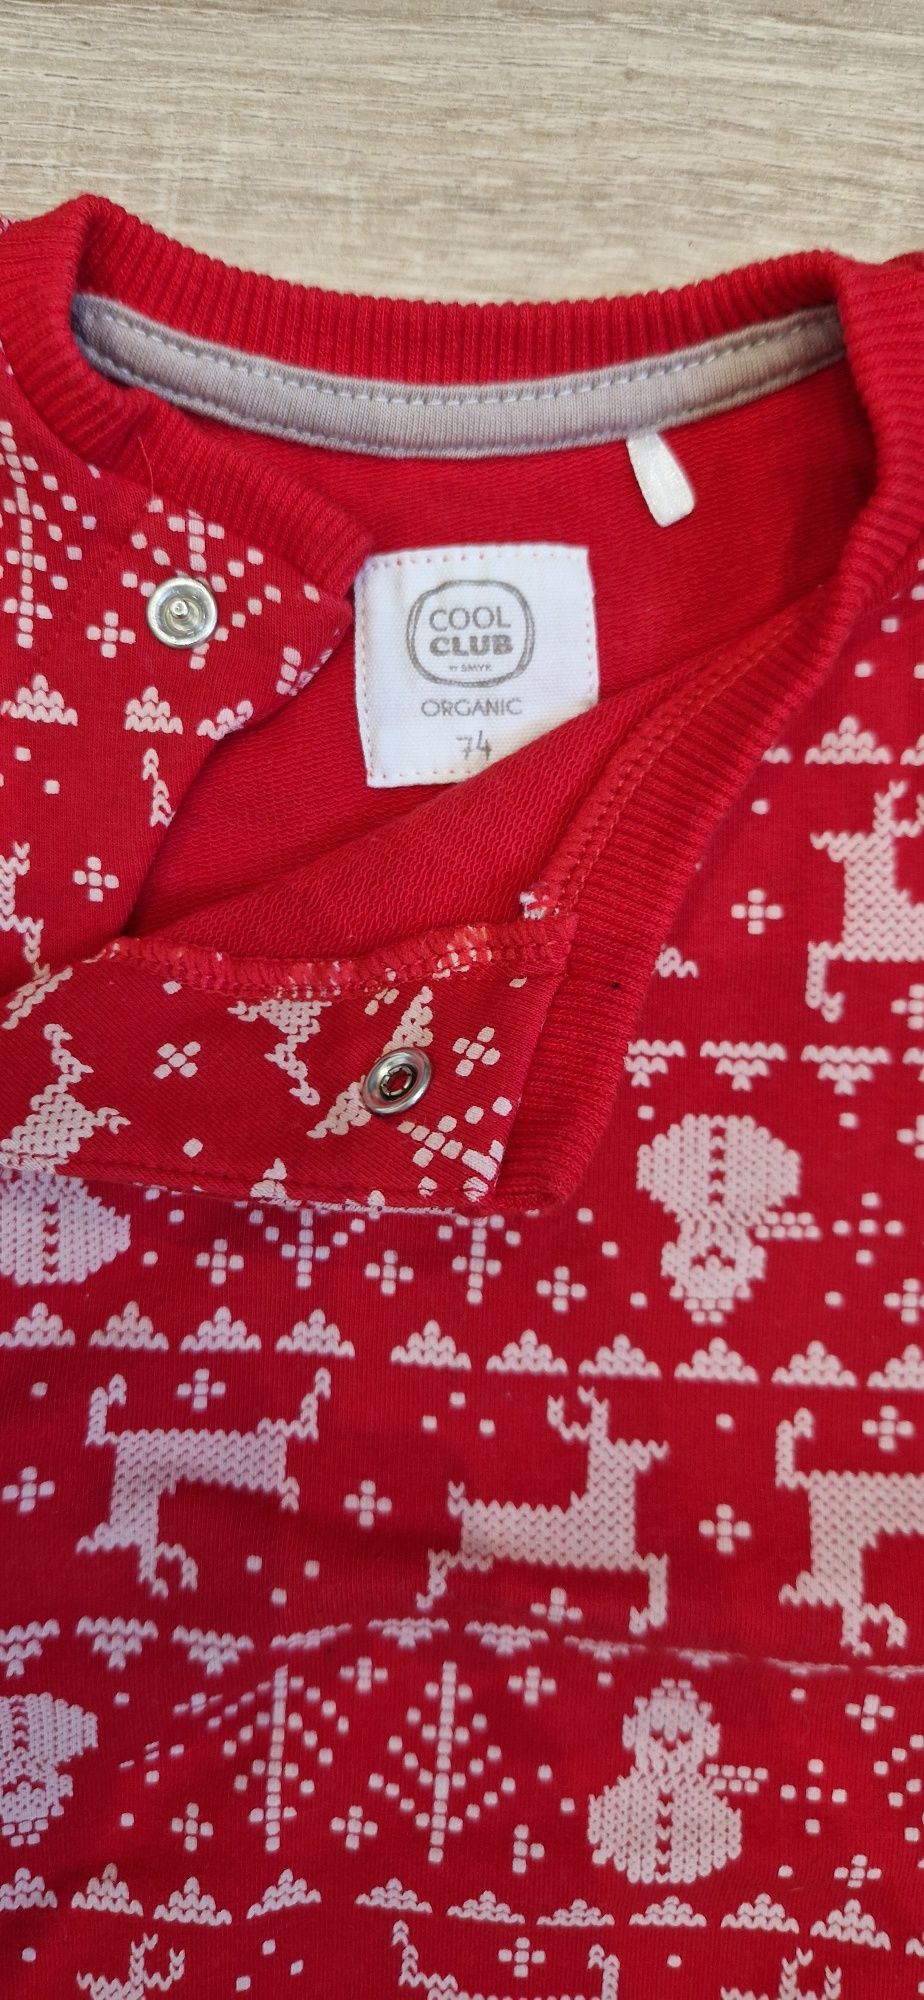 Sweterek świąteczny r. 74 nowy COOL CLUB by Smyk